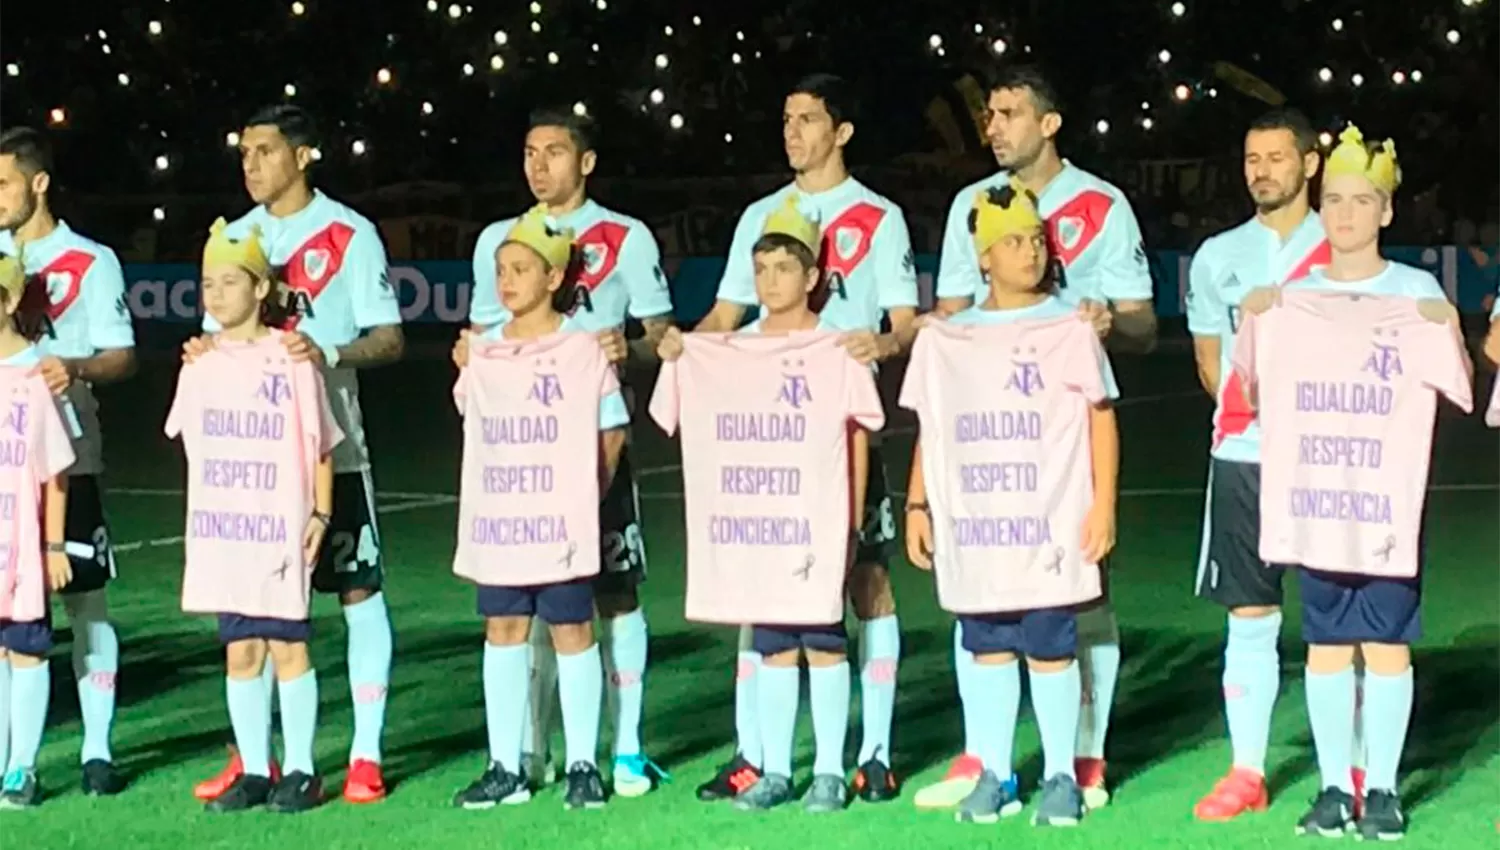 CONCIENCIA DE GÉNERO. Los jugadores de River y Boca ingresaron al campo con camisetas para apoyar la lucha de las mujeres. (CAPTURA)